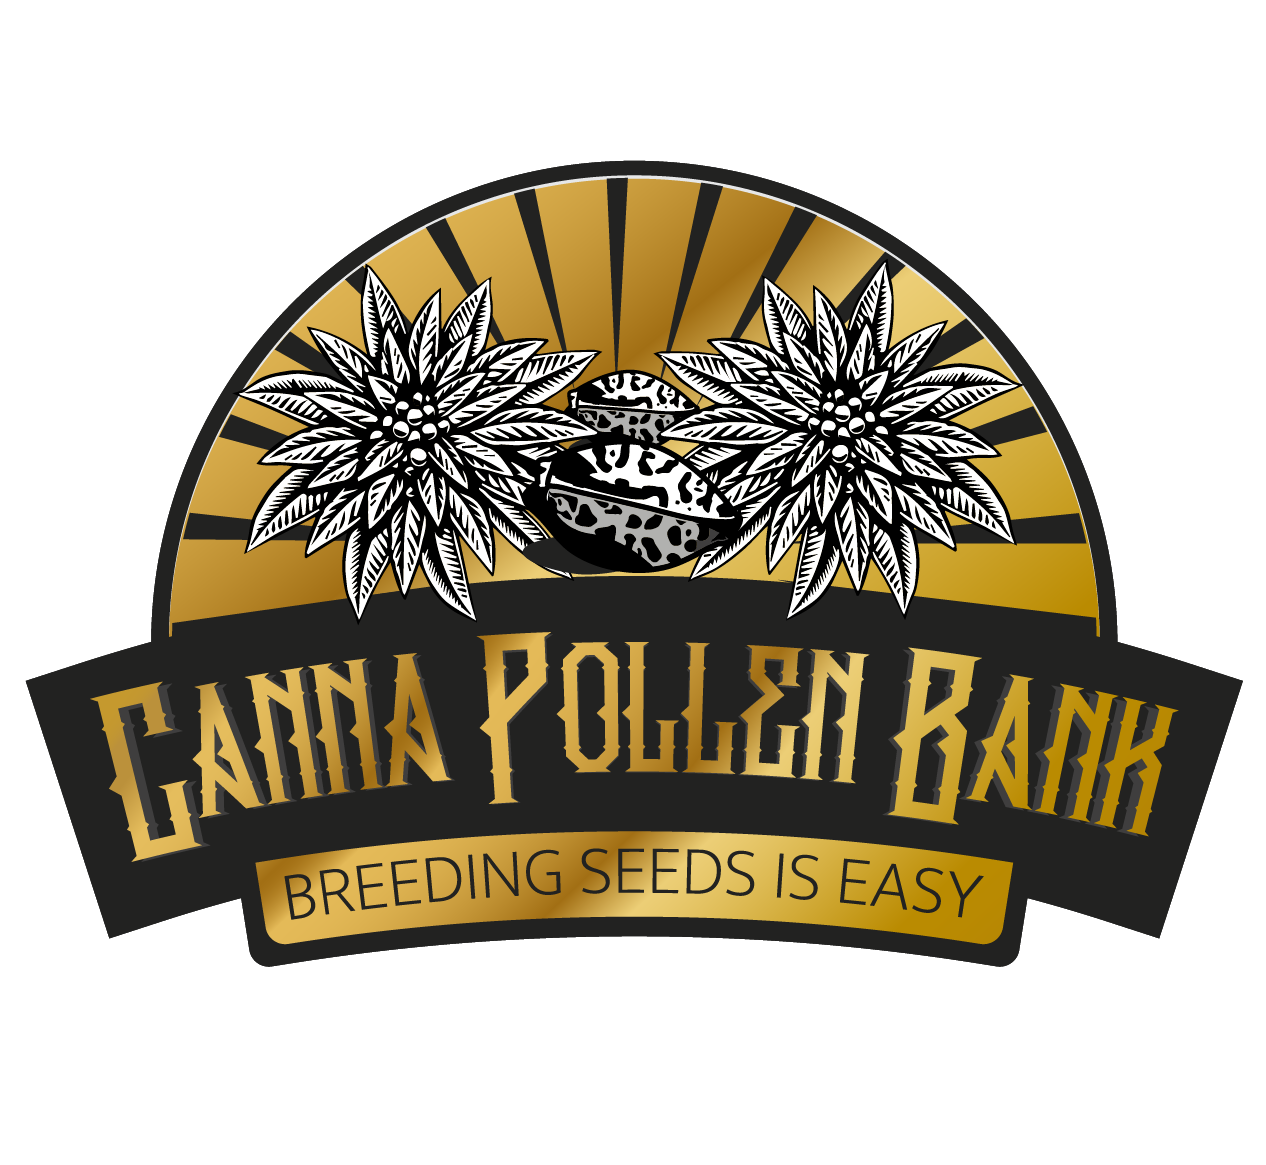 Canna Pollen Bank